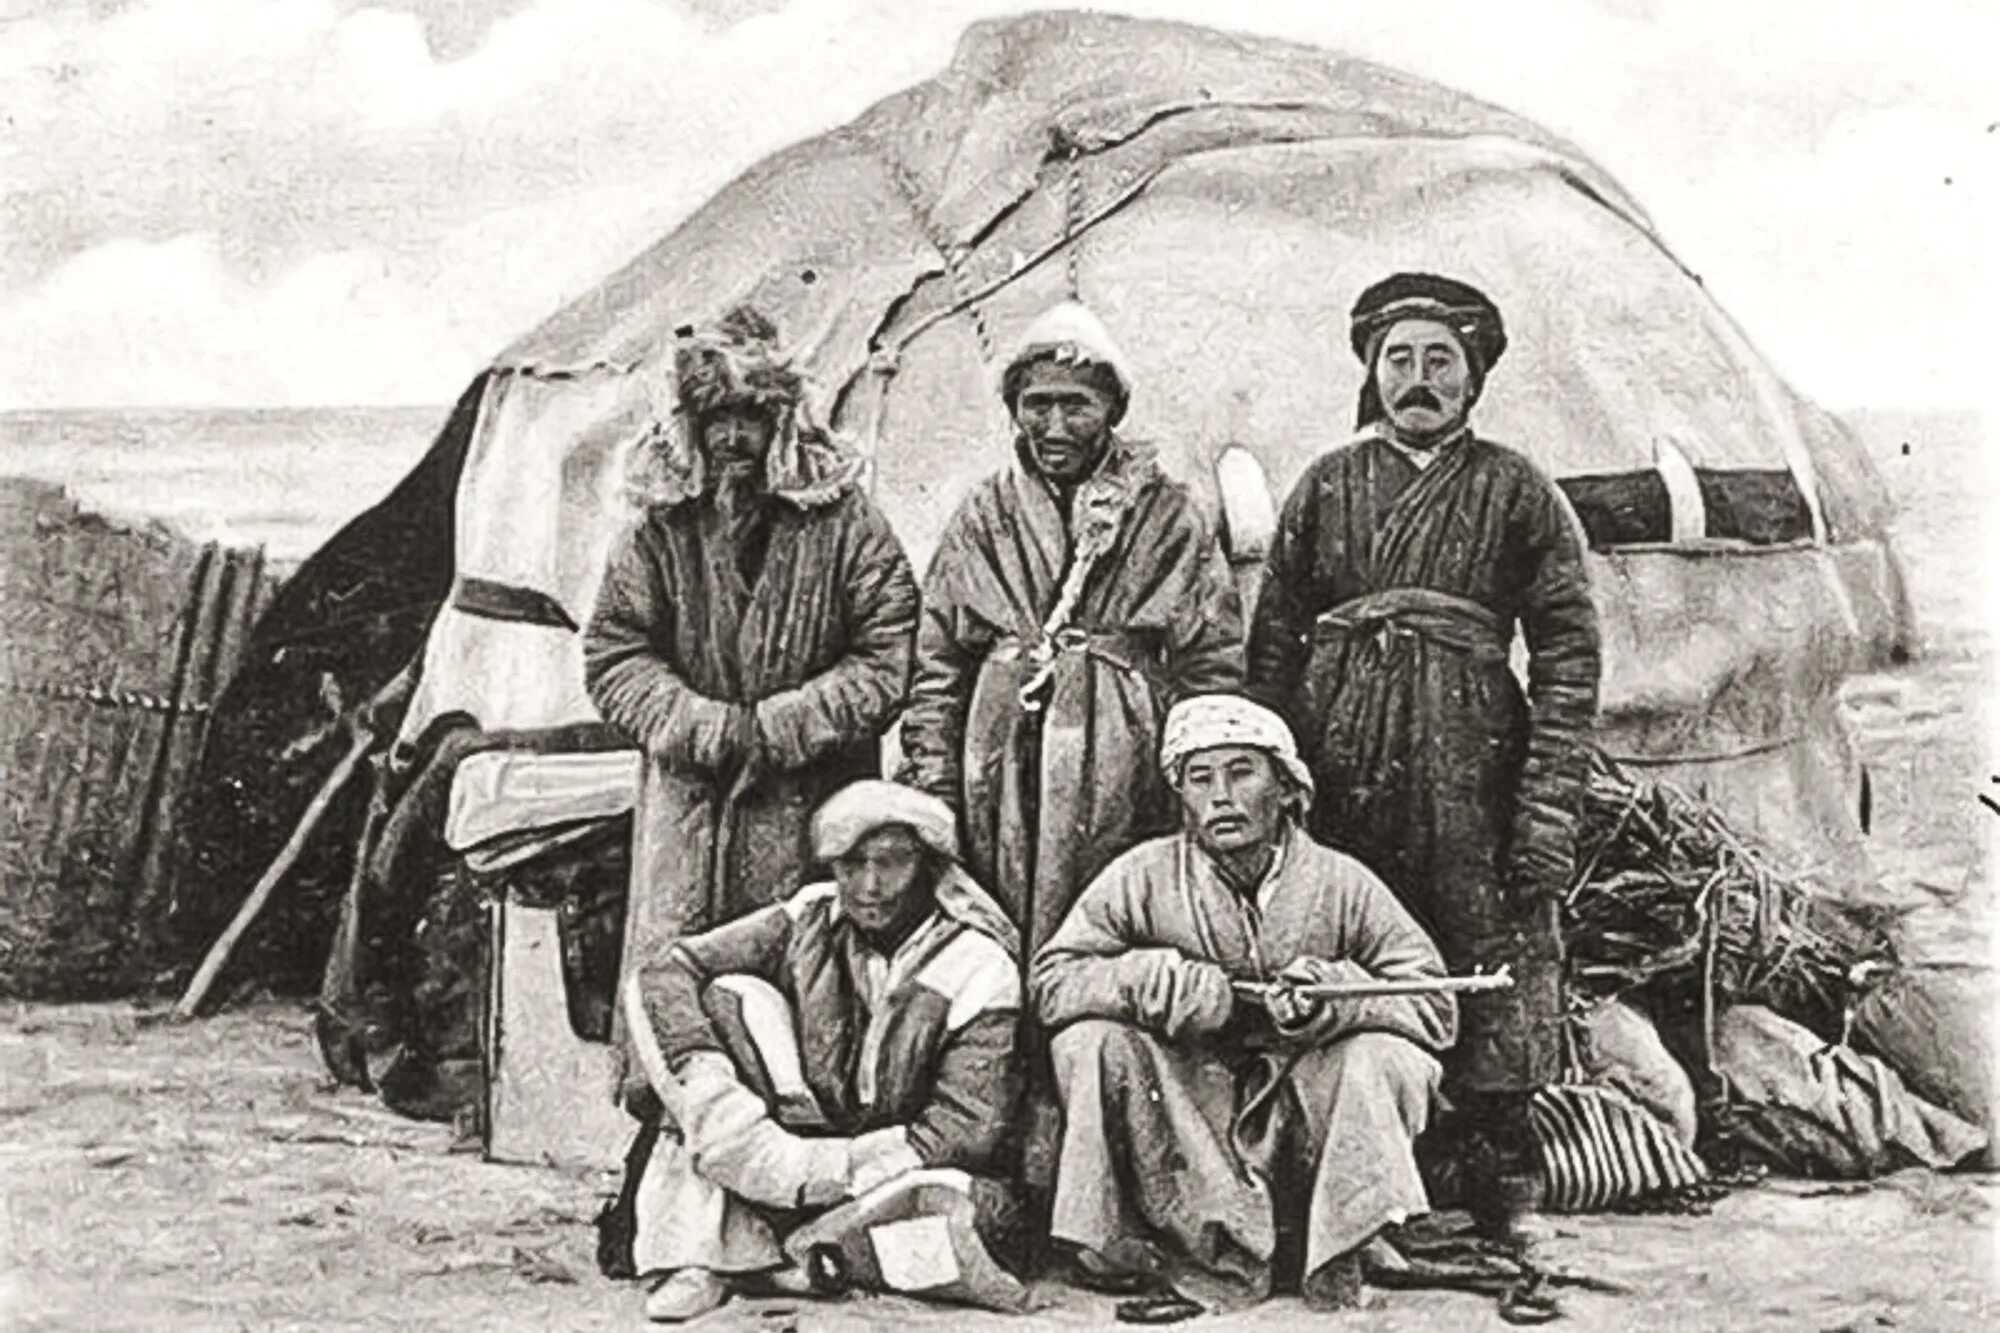 Юрты алтайцев 19 век. Киргизские кочевники 19 век. Киргизы Азии 19 век. Казахская степь 19 век. История народа казахстана